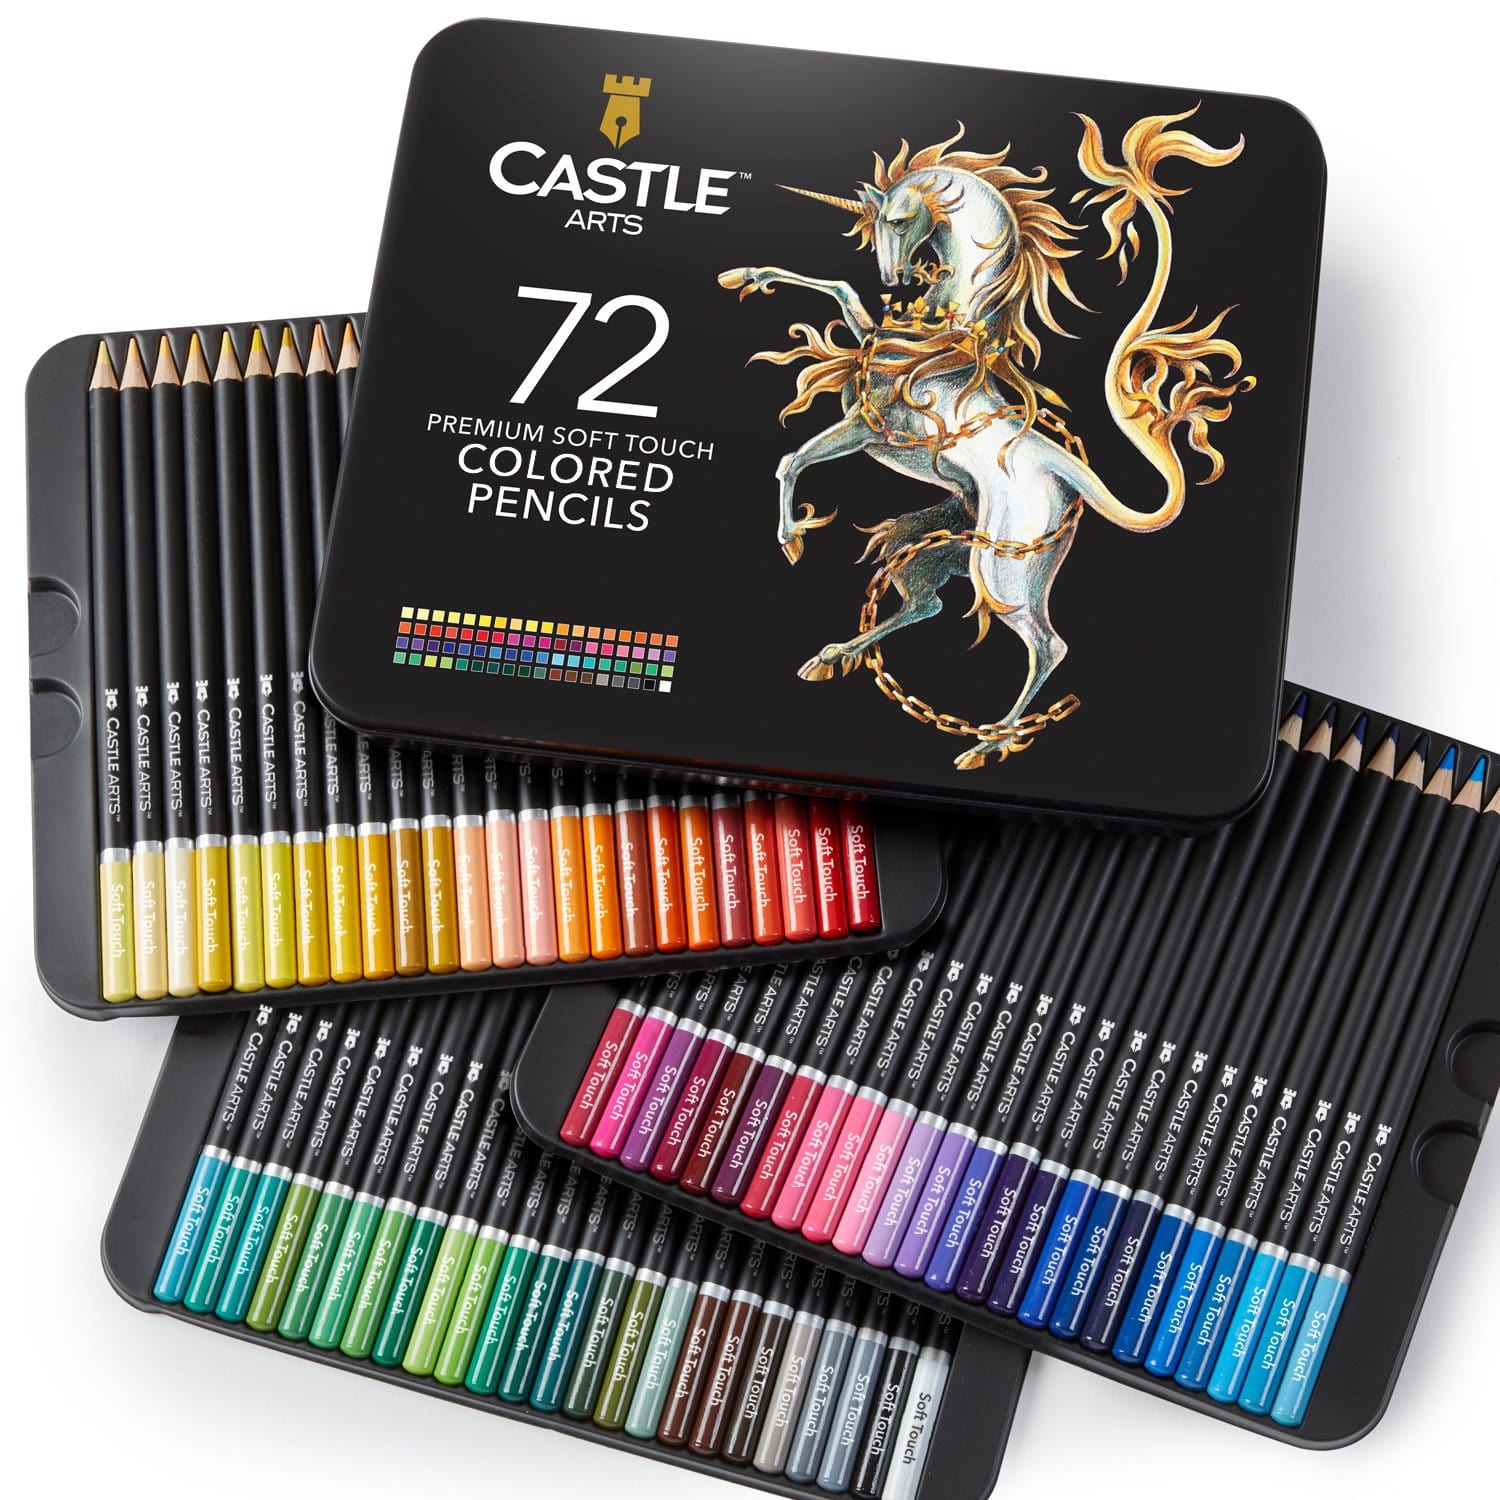 http://castlearts.com/cdn/shop/products/Colored-Pencils-x72_02-US.jpg?v=1622215805